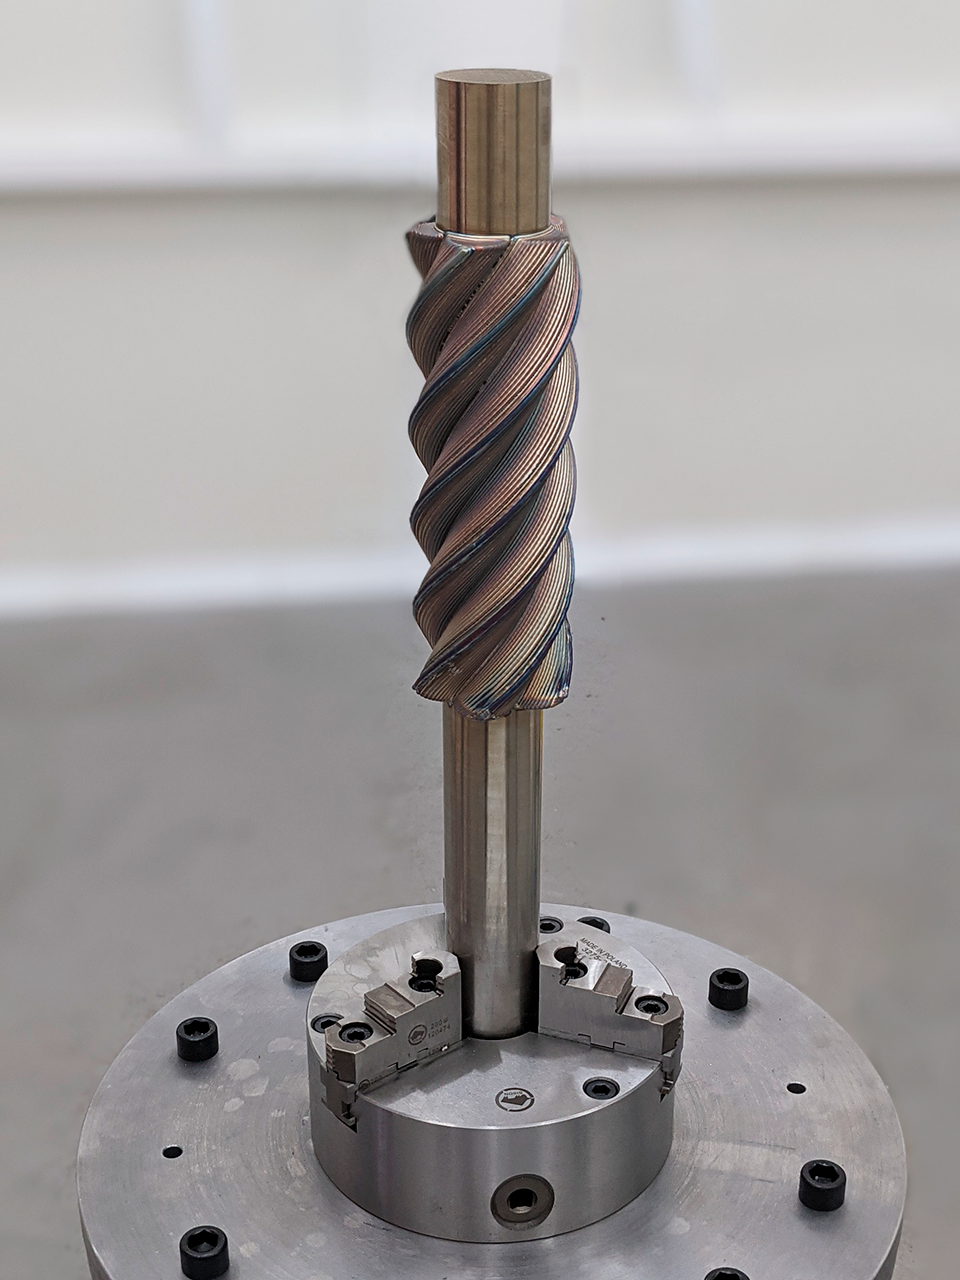 The 3D printed rotary screw compressor. Photo via Meltio.